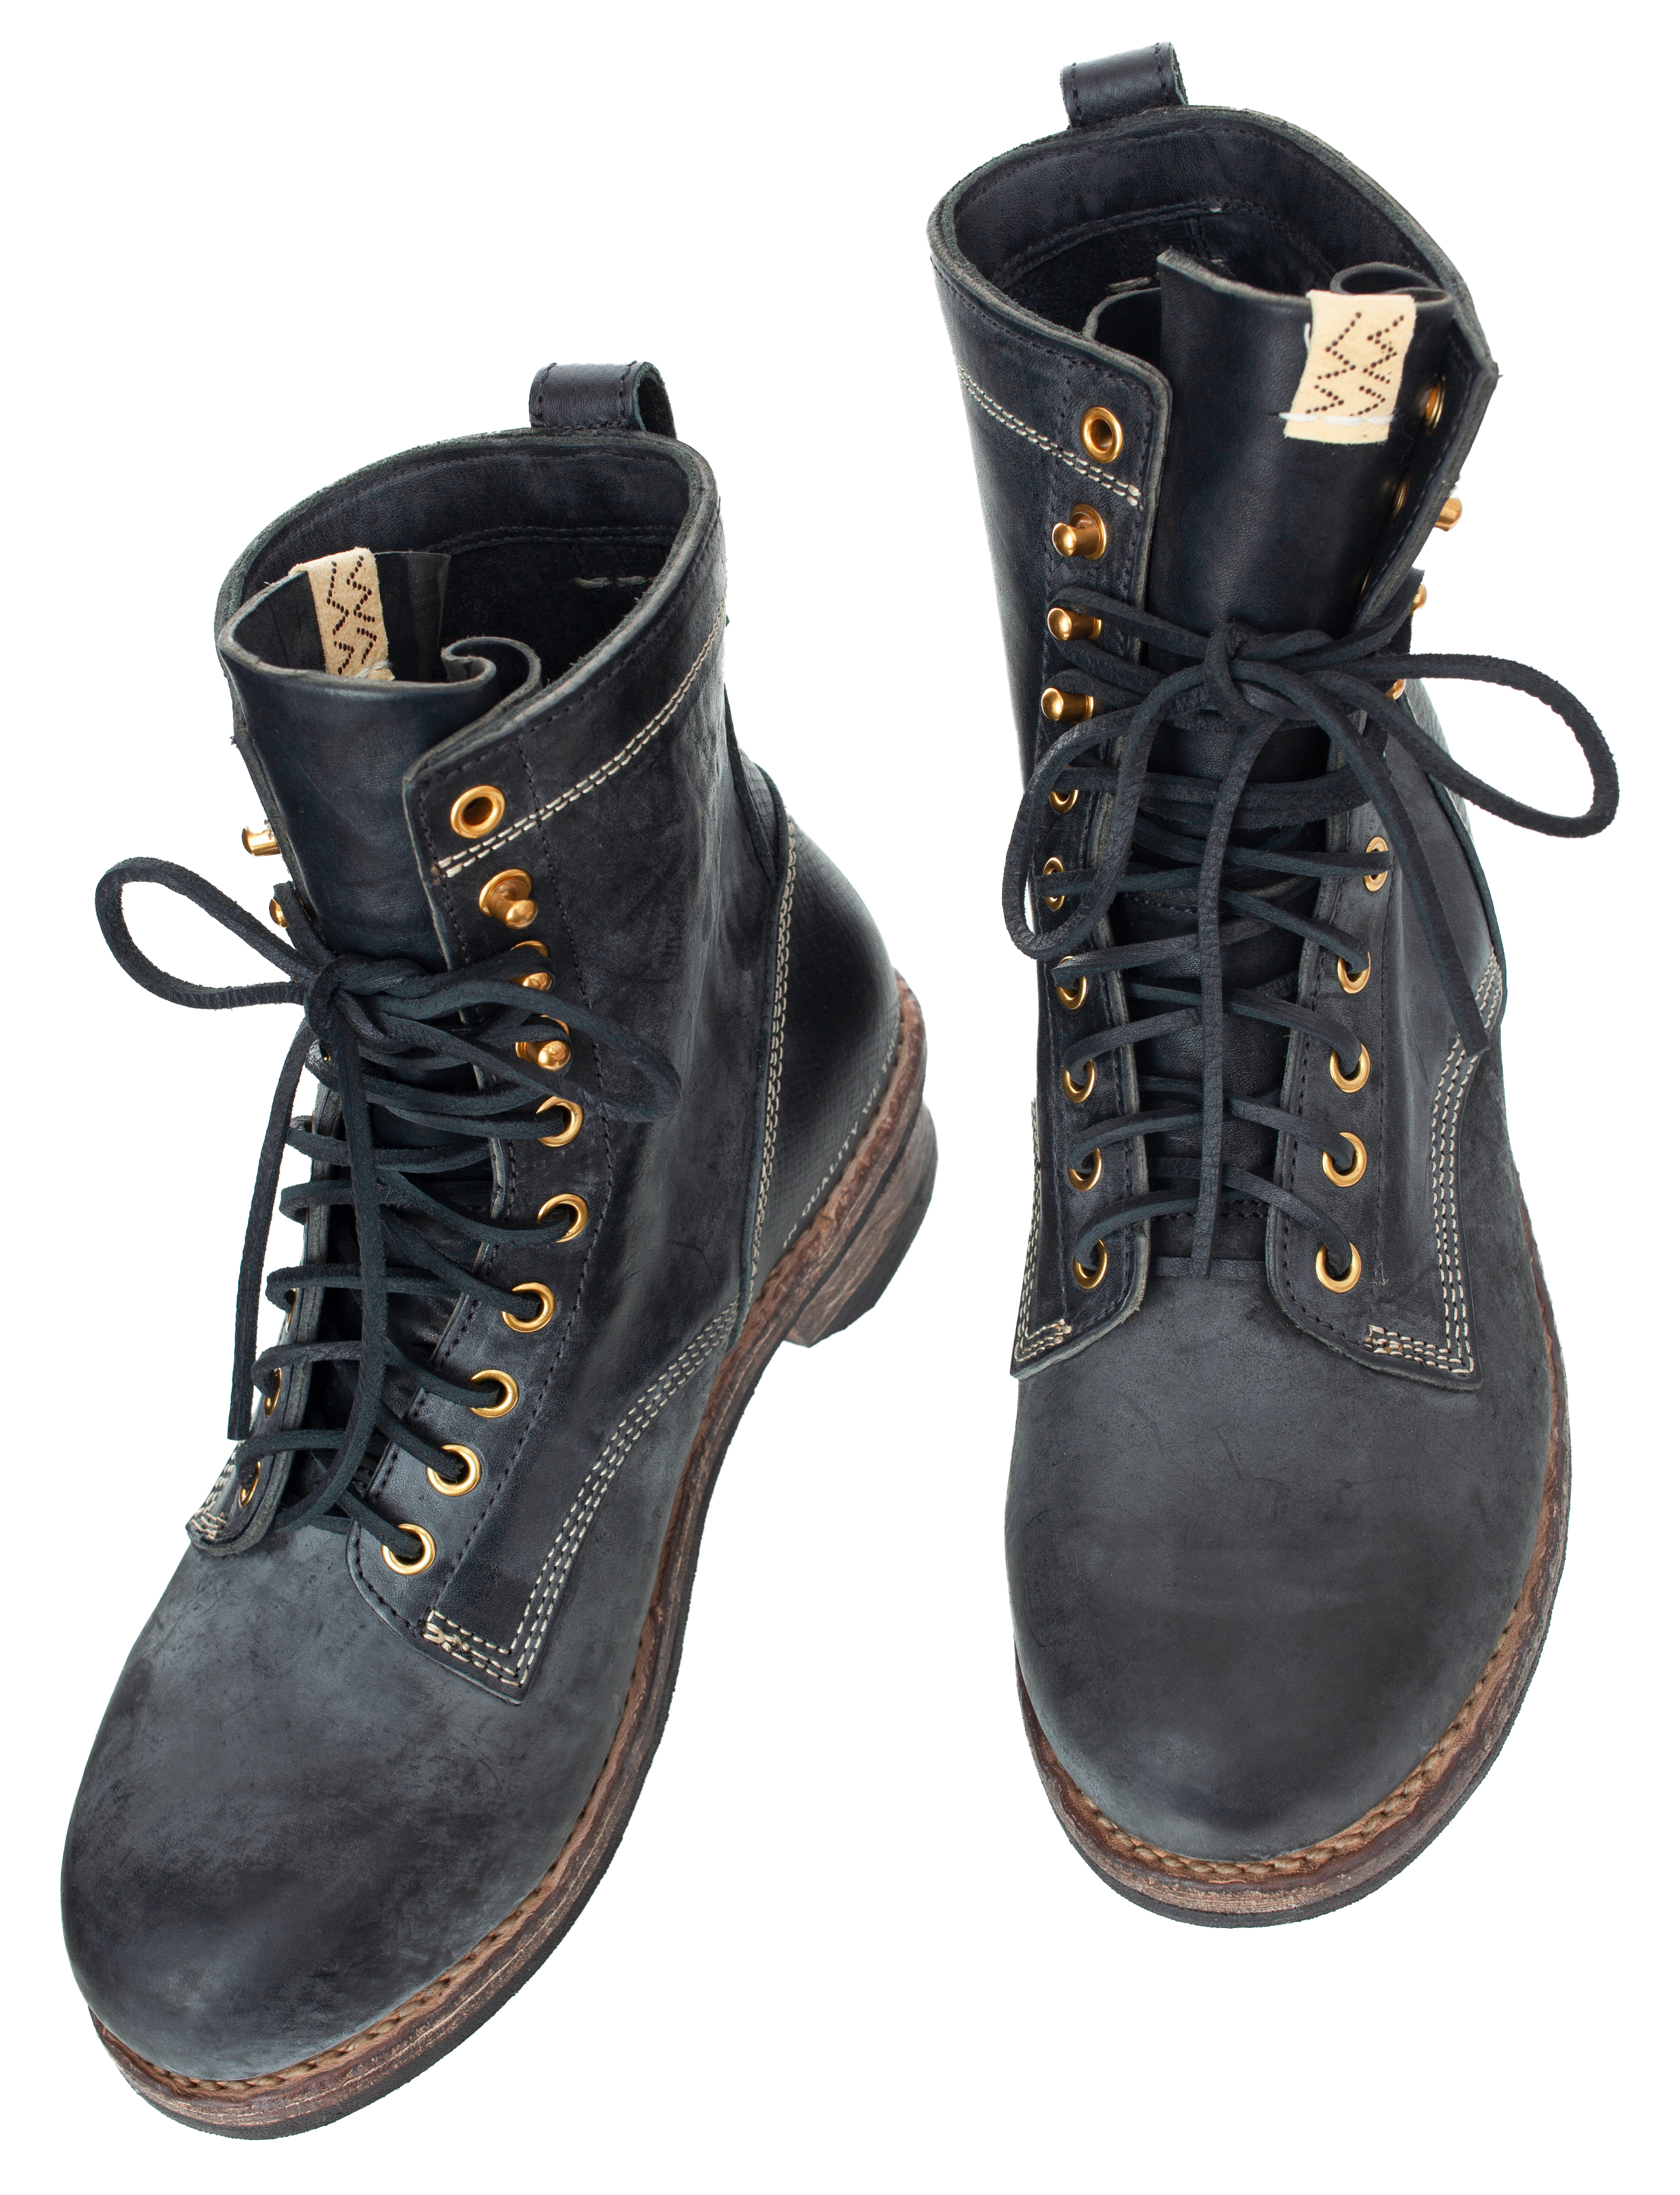 Poundmaker-folk leather boots